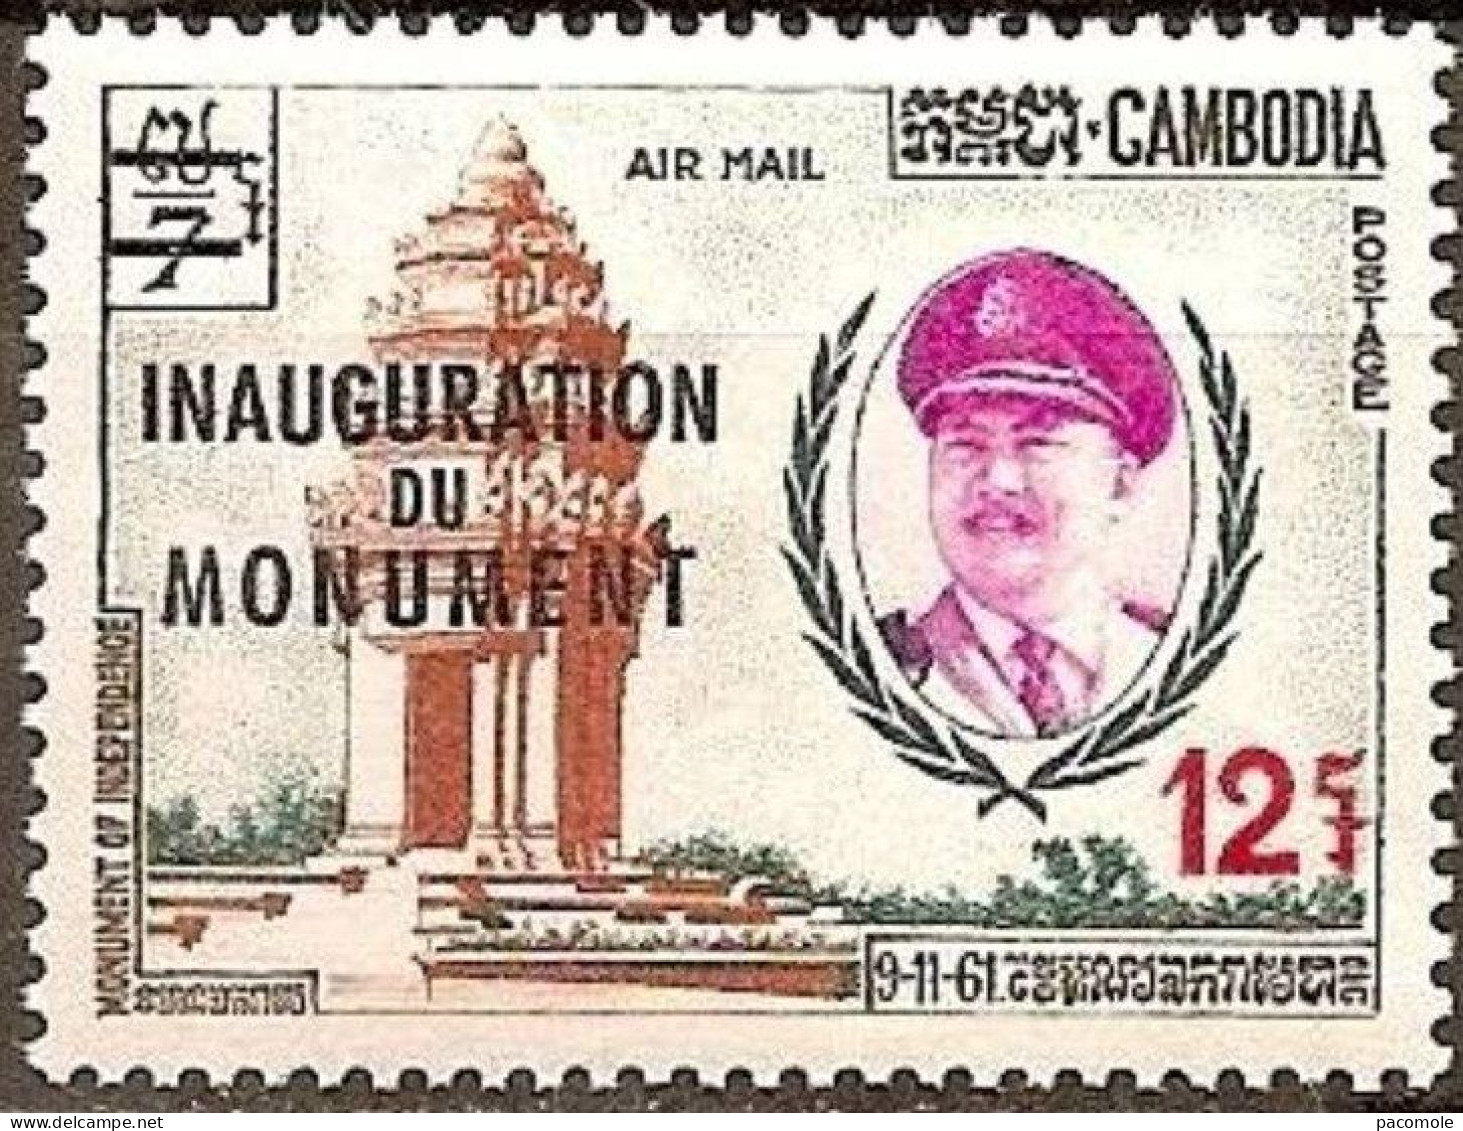 Cambodge - Journée de l'indépendance - inauguration monument